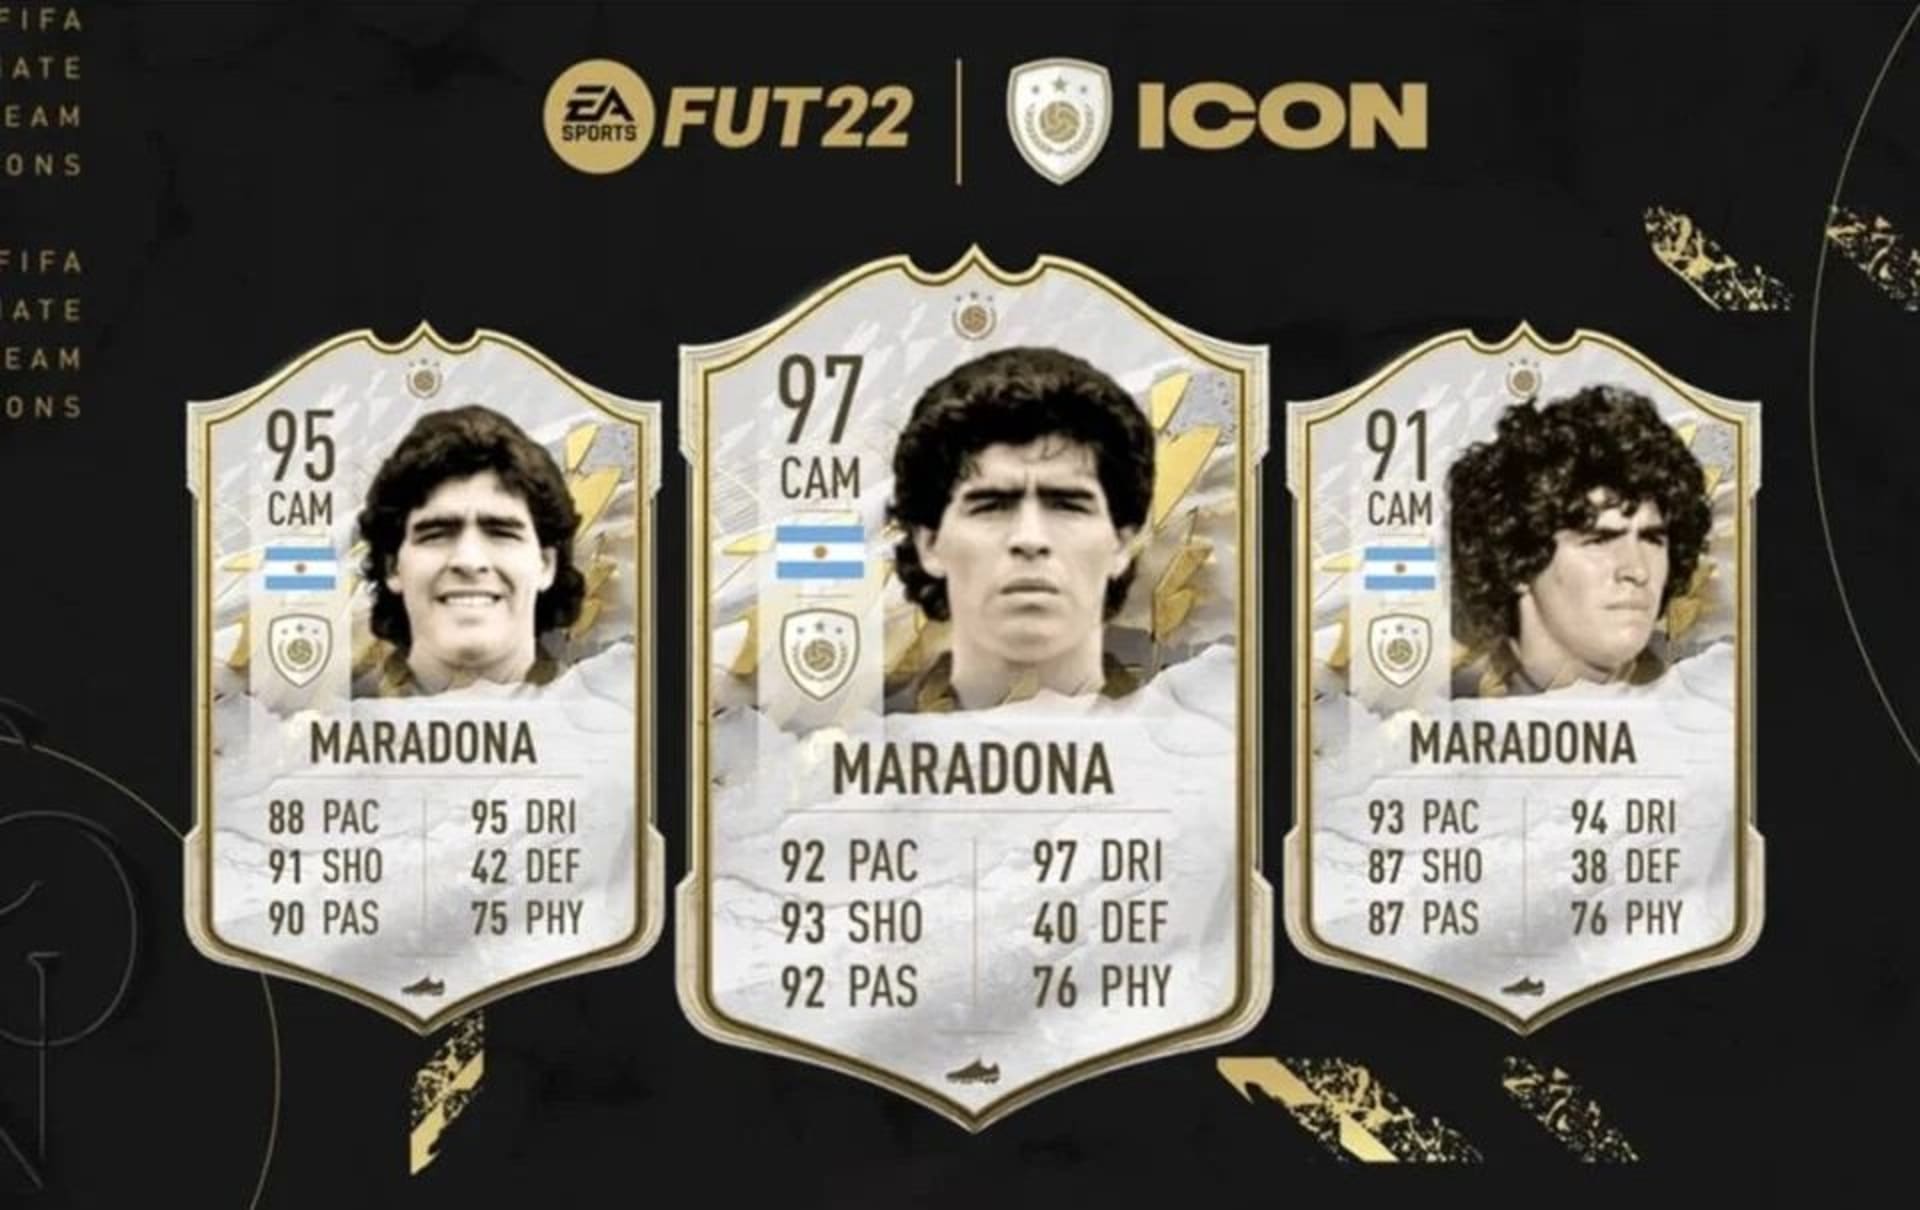 Různé podoby Maradony ve hře FIFA 22